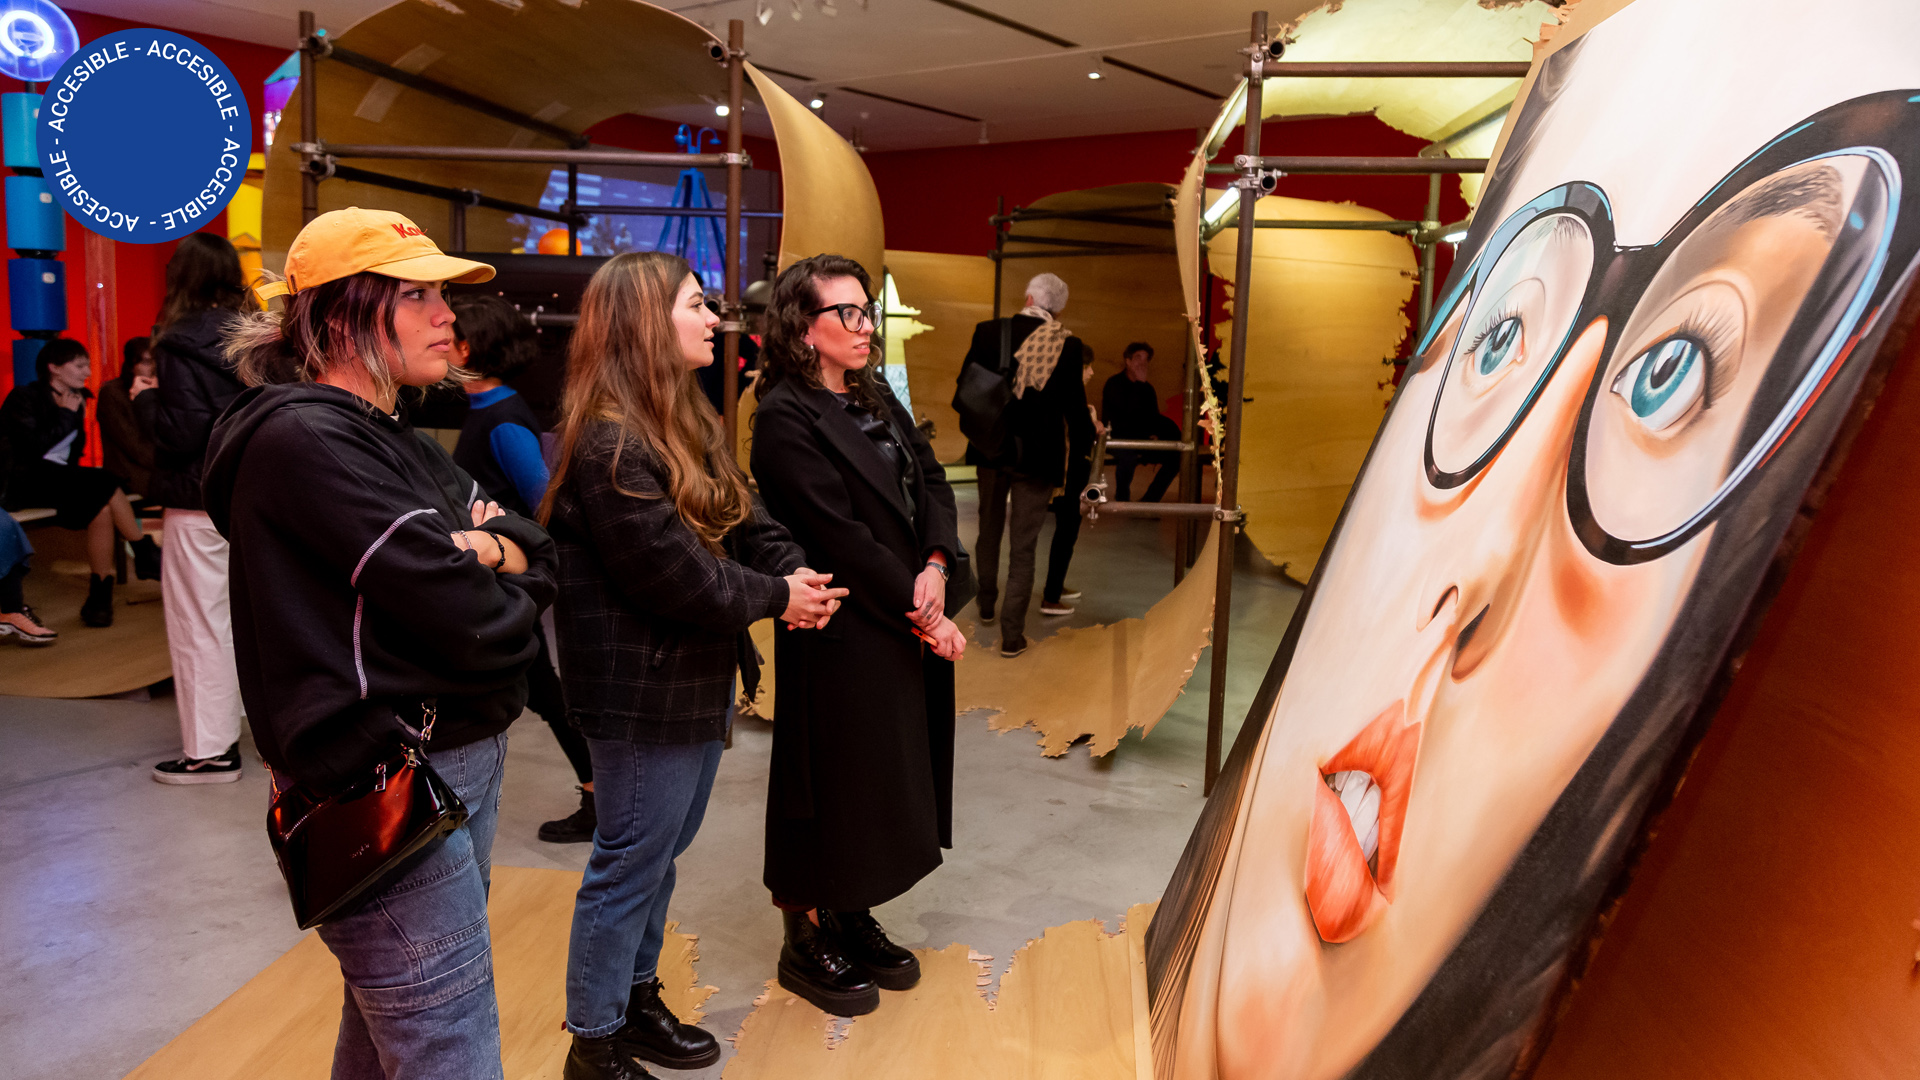 La imagen muestra una pintura en primer plano –el retrato de una mujer con gafas– y a tres mujeres comentando enfrente de la obra. De fondo, se ven personas recorriendo la exposición.